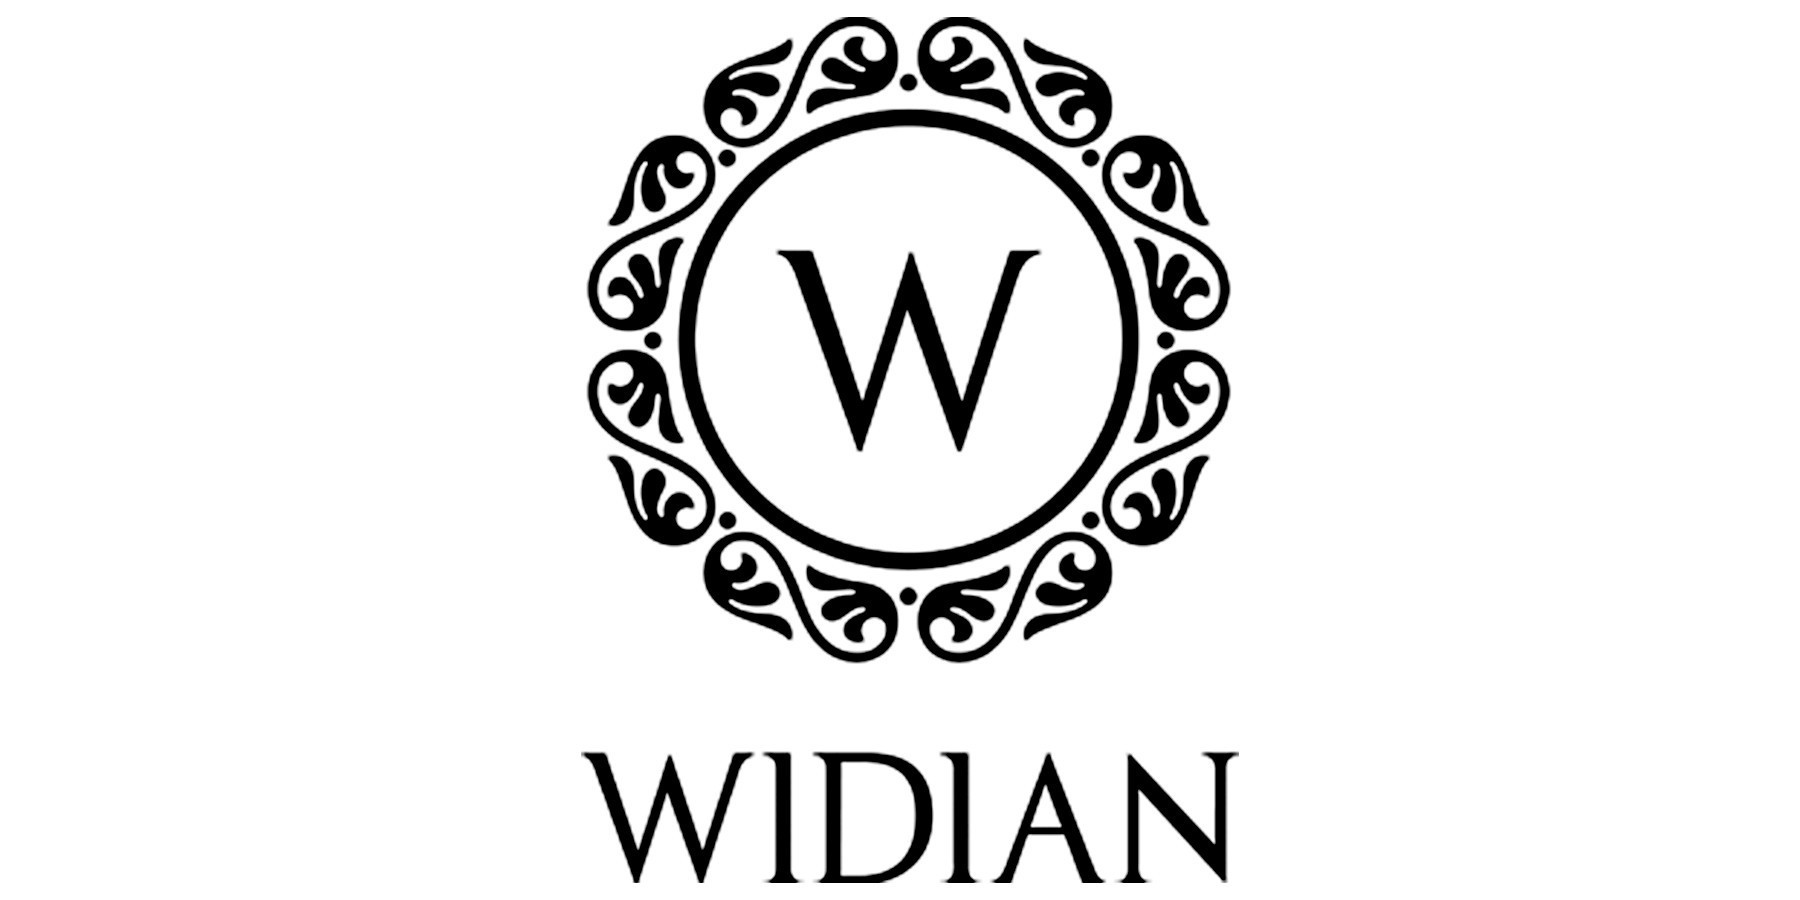 WIDIAN